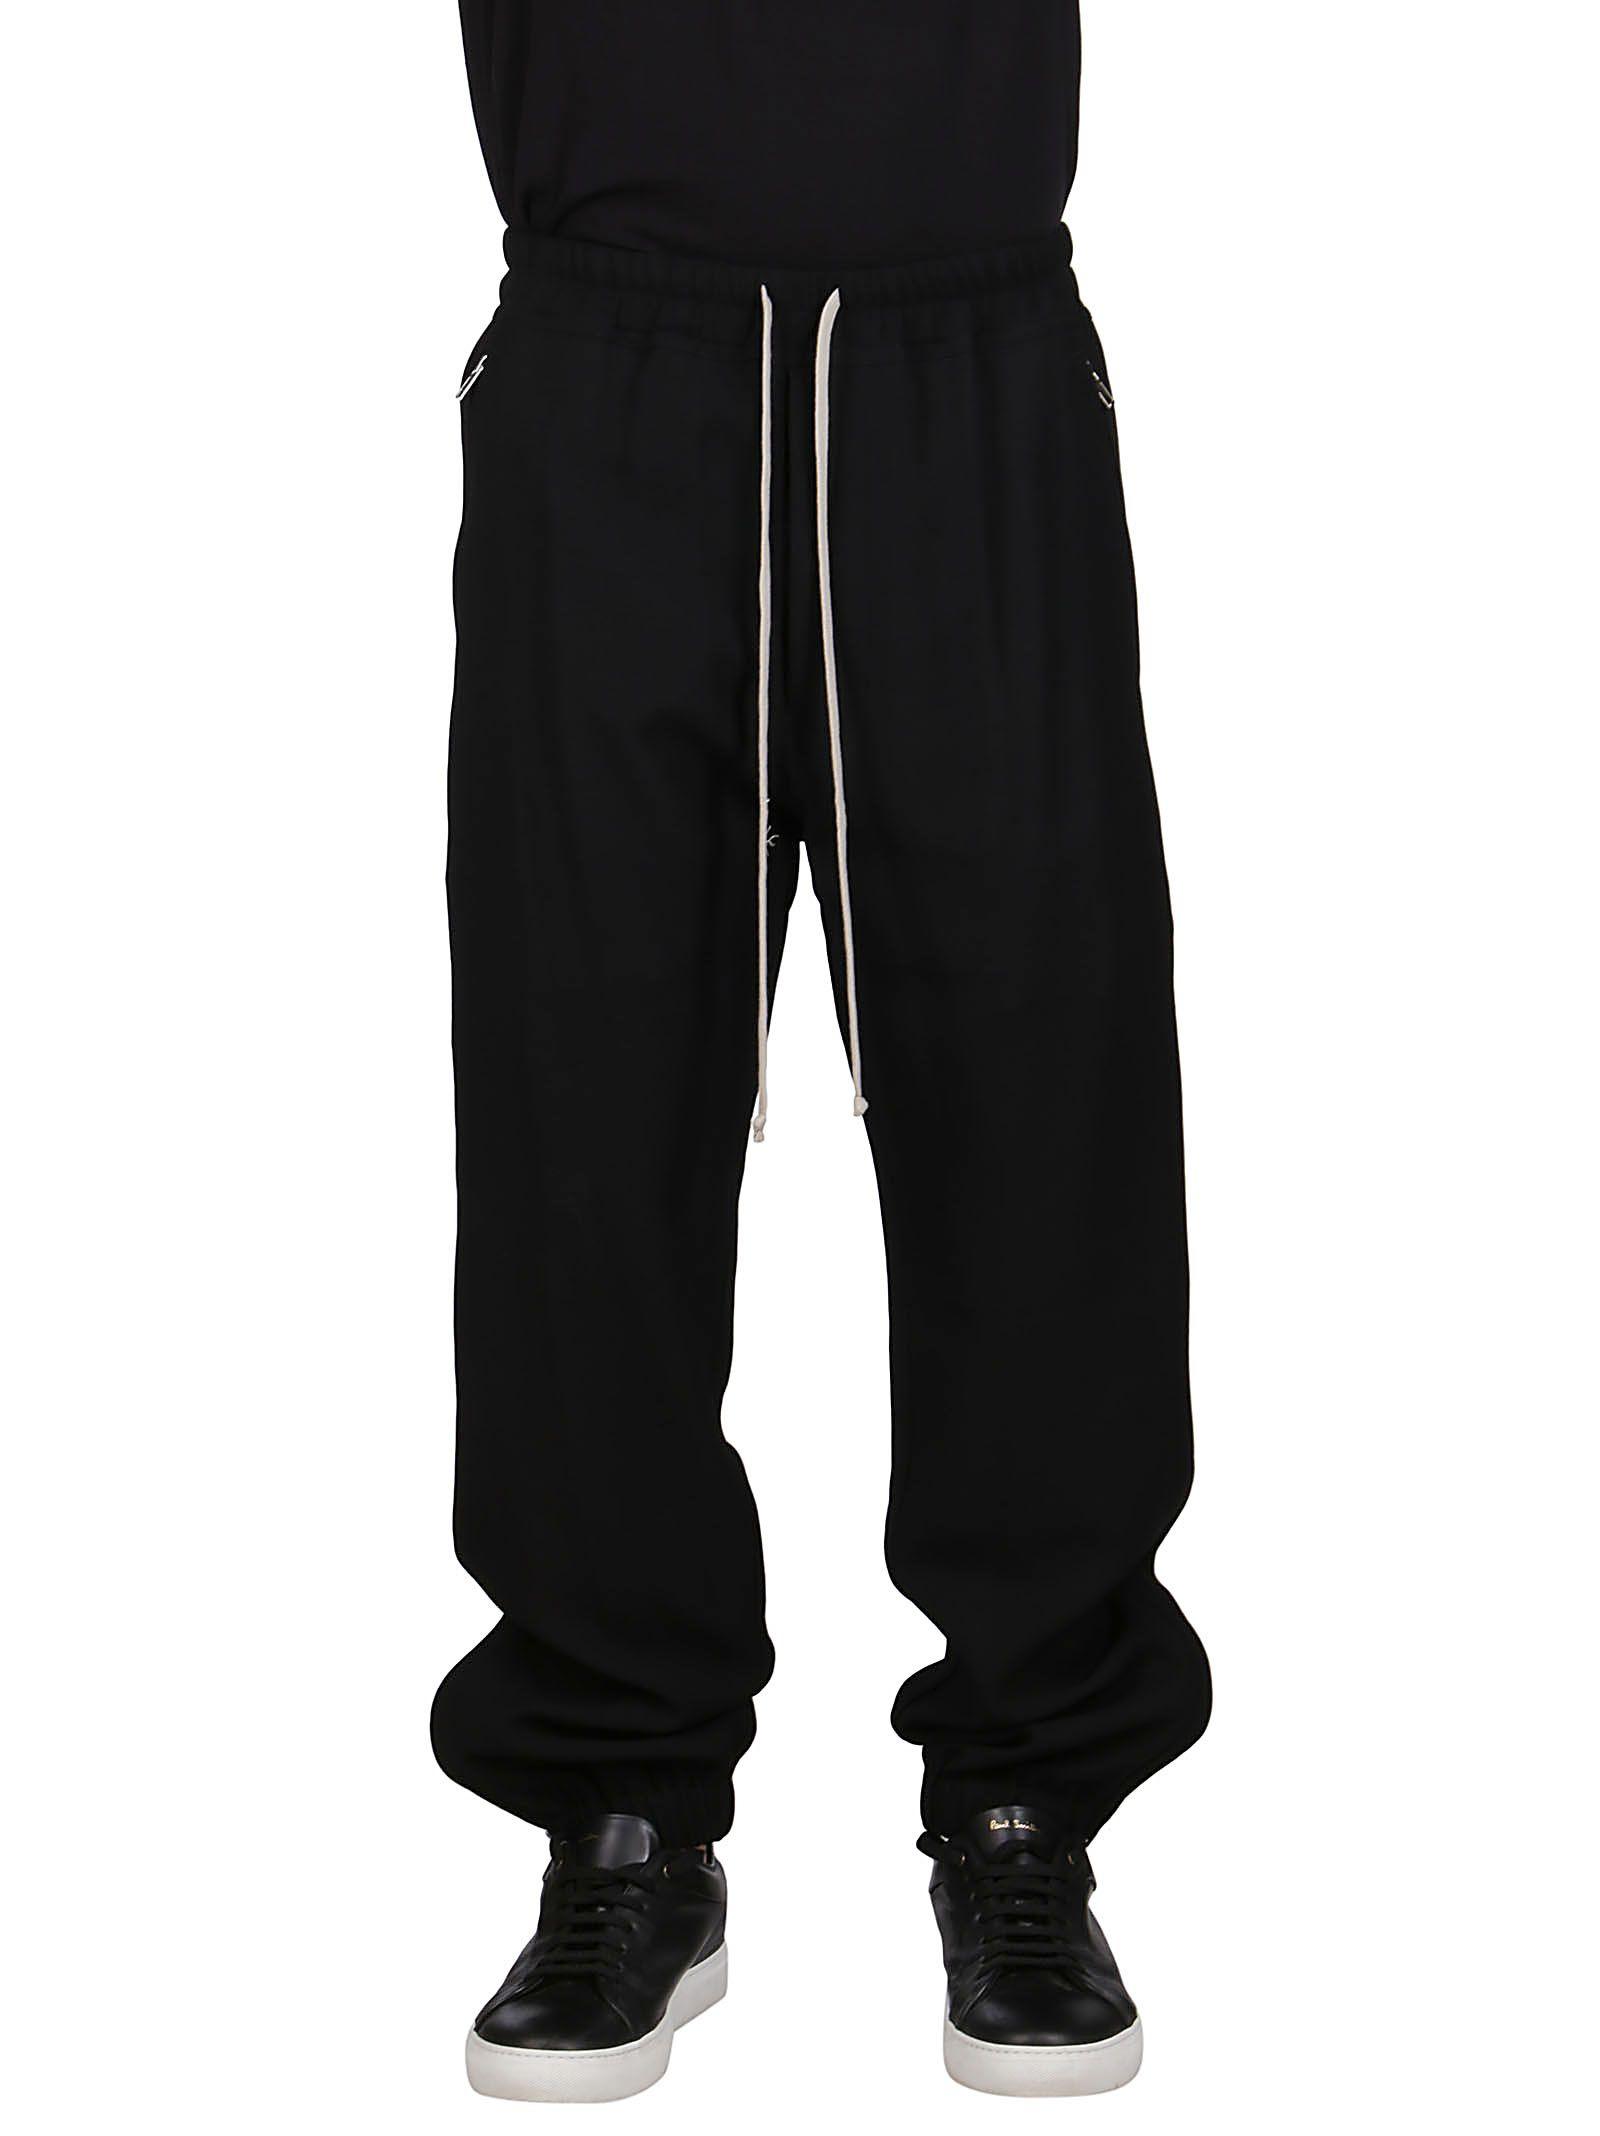 Rick Owens Wool Pants in Black for Men - Lyst